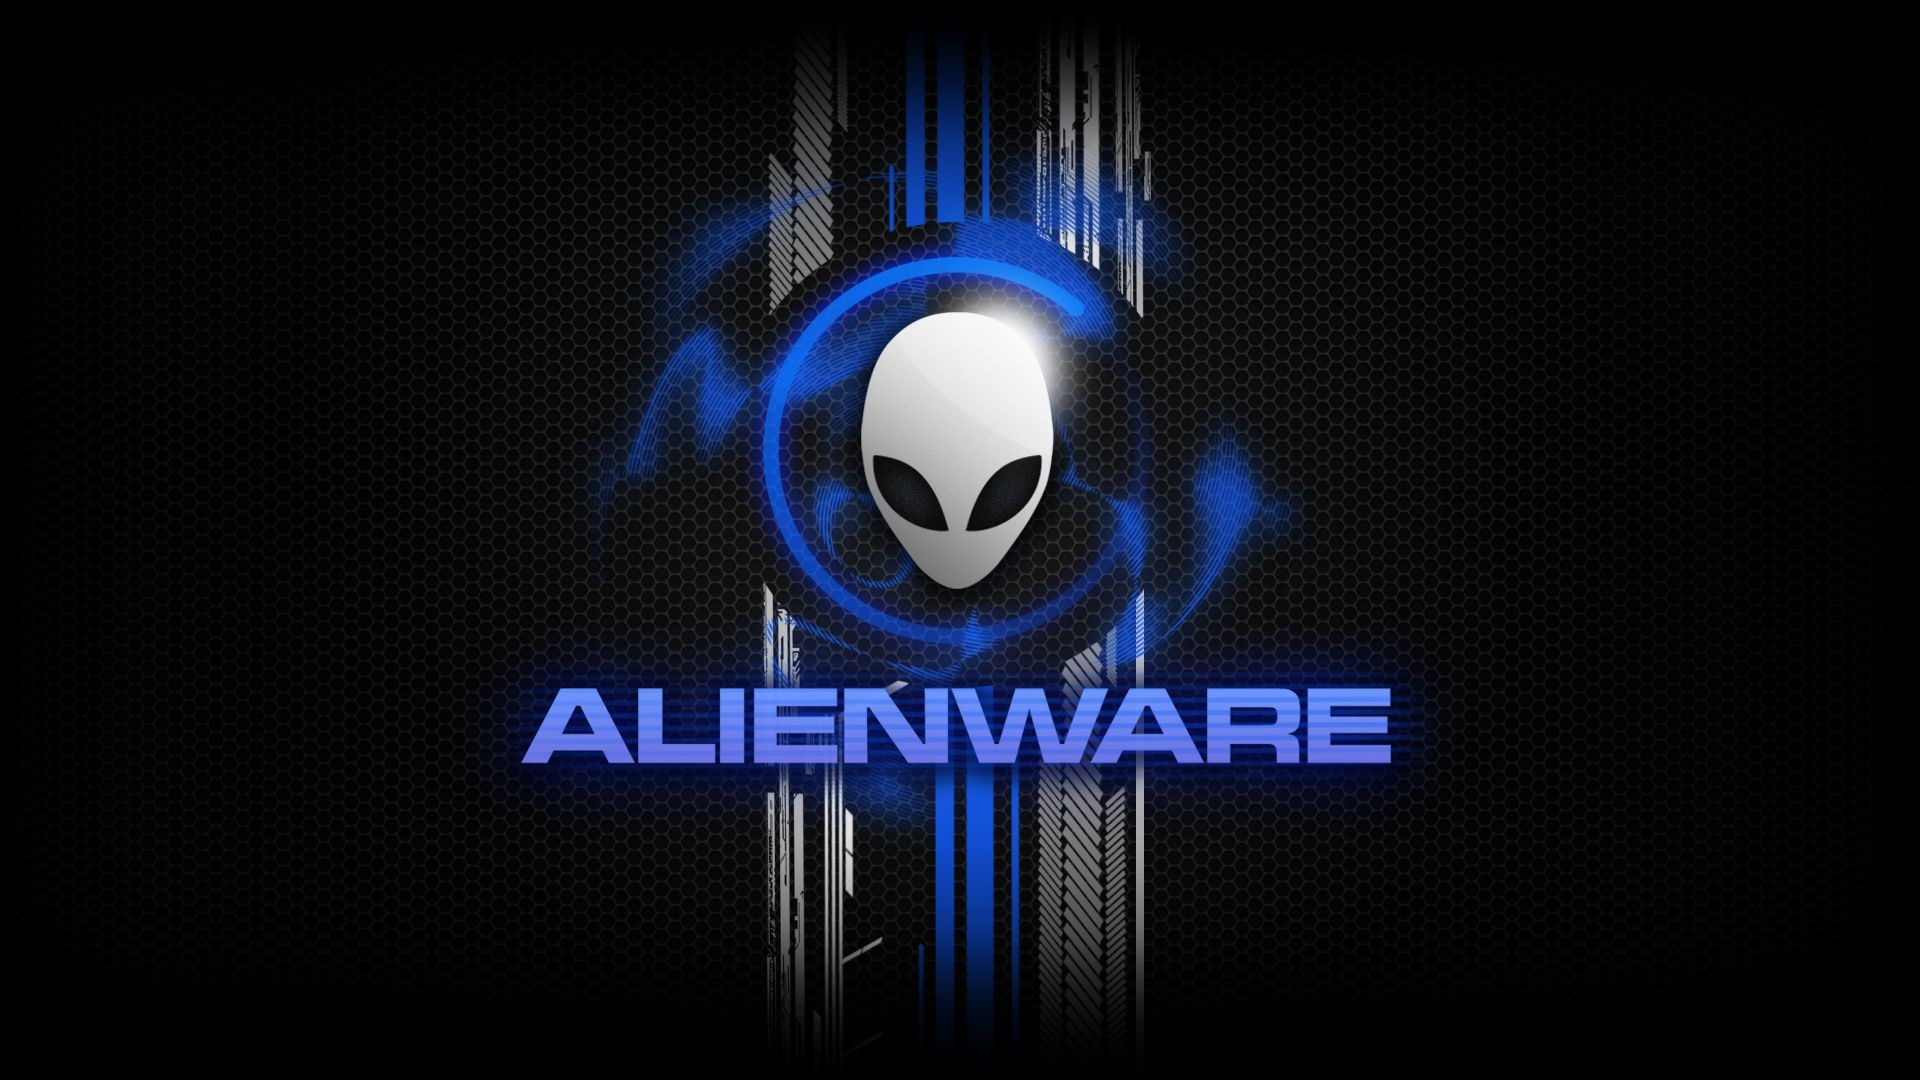 Alienware Desktop Backgrounds - Alienware Fx Themes 1920x1080